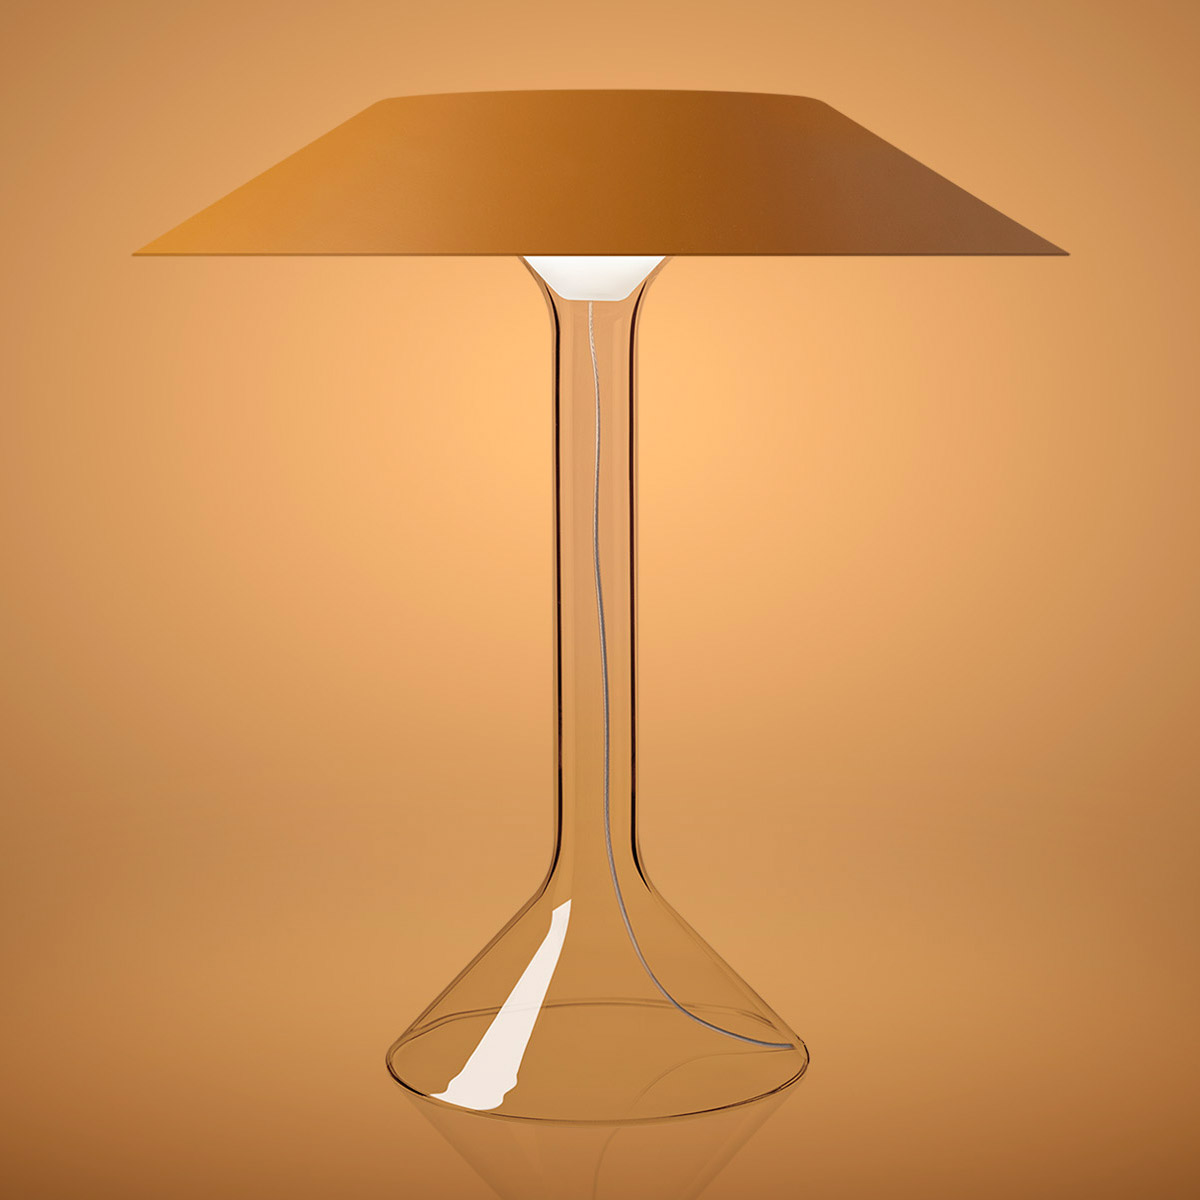 Chapeaux M steel table lamp by Foscarini